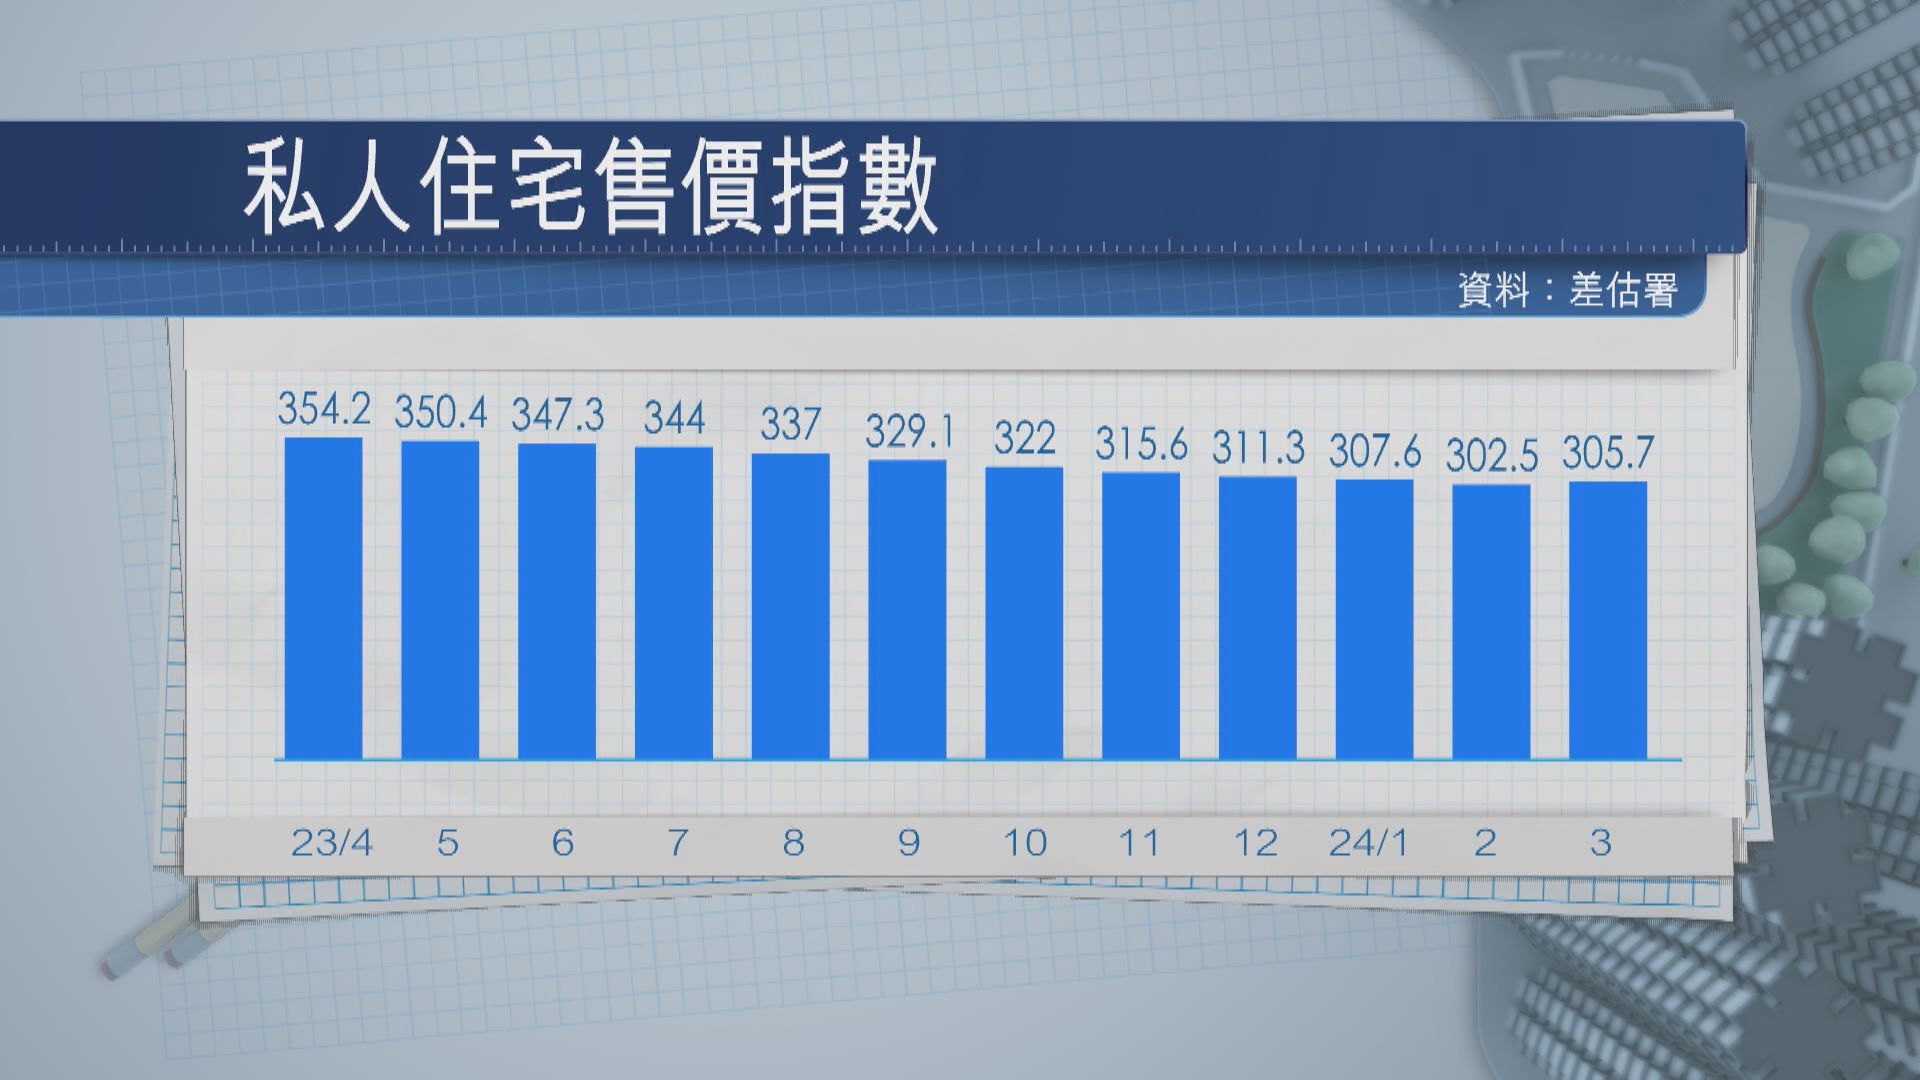 【暫露曙光】本港3月私樓樓價回升1% 結束10個月跌勢